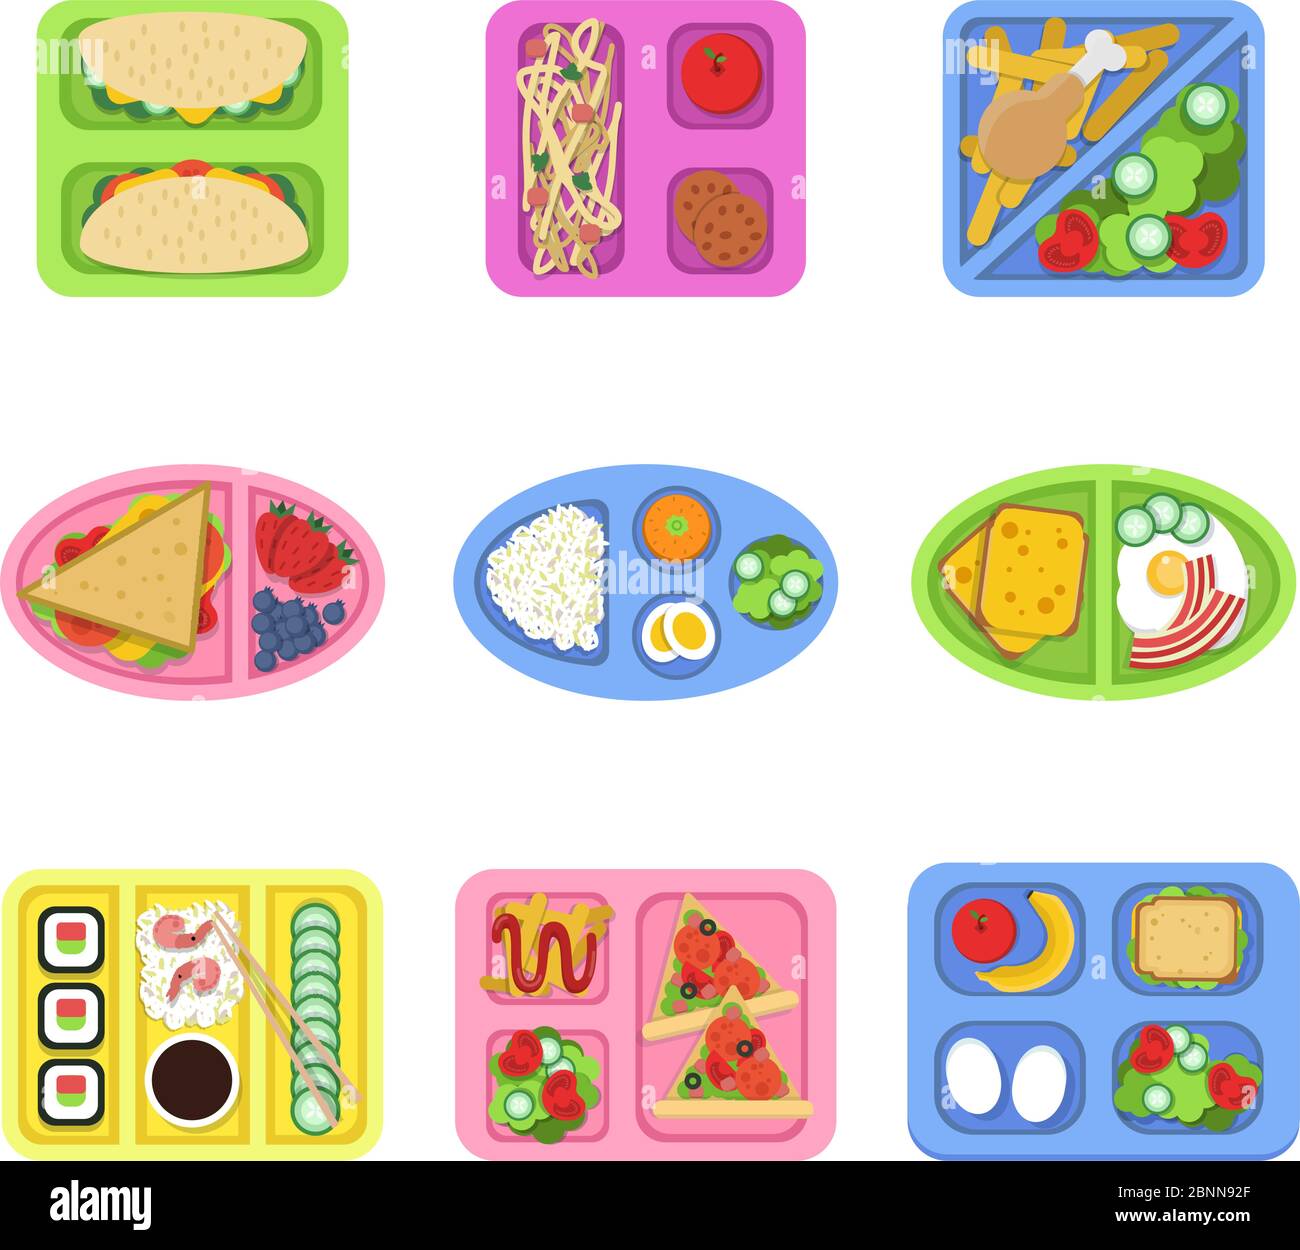 Lunchbox. Schule frisches gesundes Essen in Plastikbehältern mit Gemüse, Mahlzeit und in Scheiben geschnittenen Produkten zum Frühstück. Vektorbilder Stock Vektor